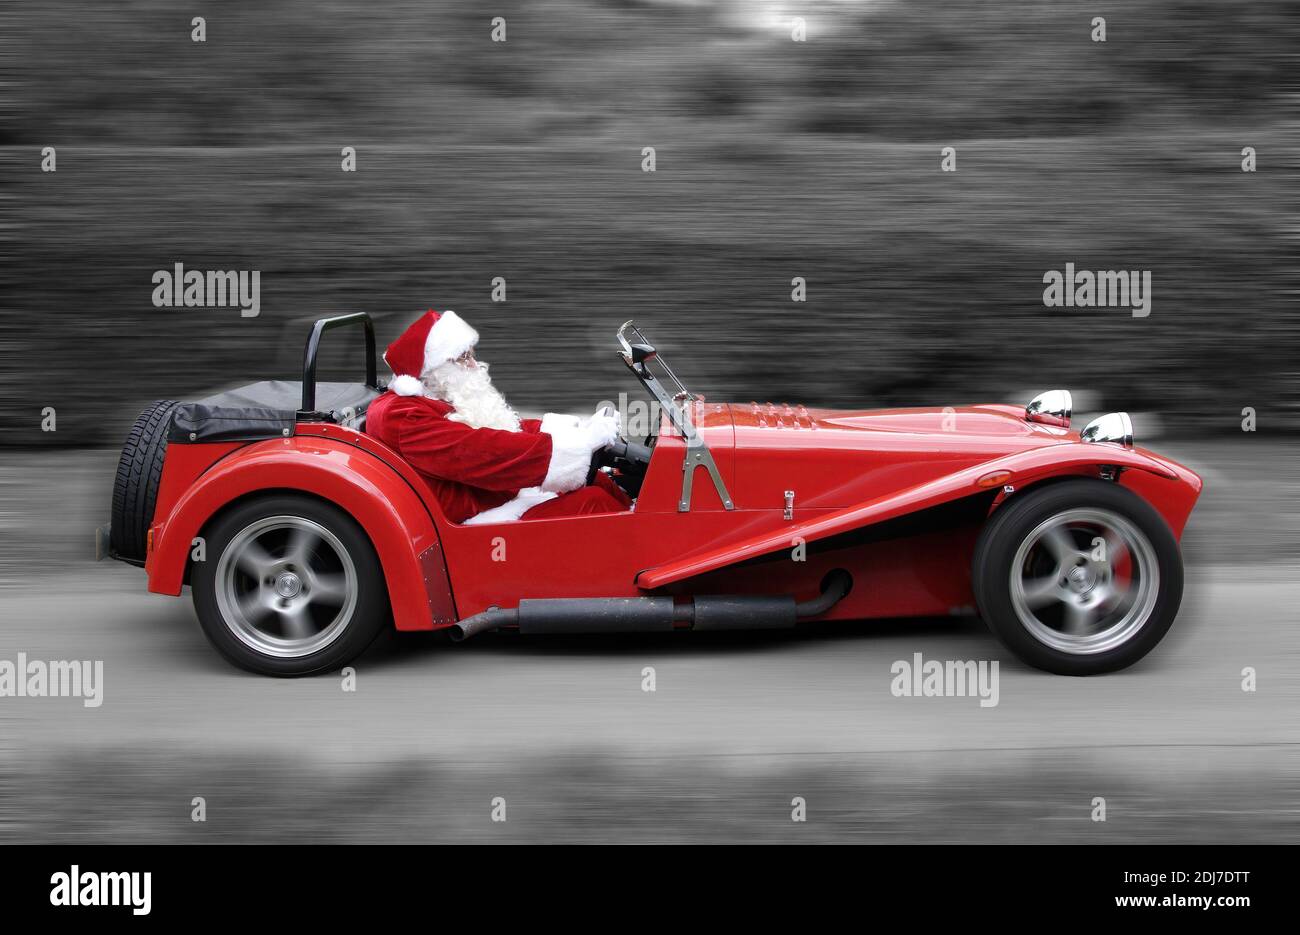 Padre Natale alla guida di un'auto sportiva rossa (immagine della scheda di Natale) Foto Stock